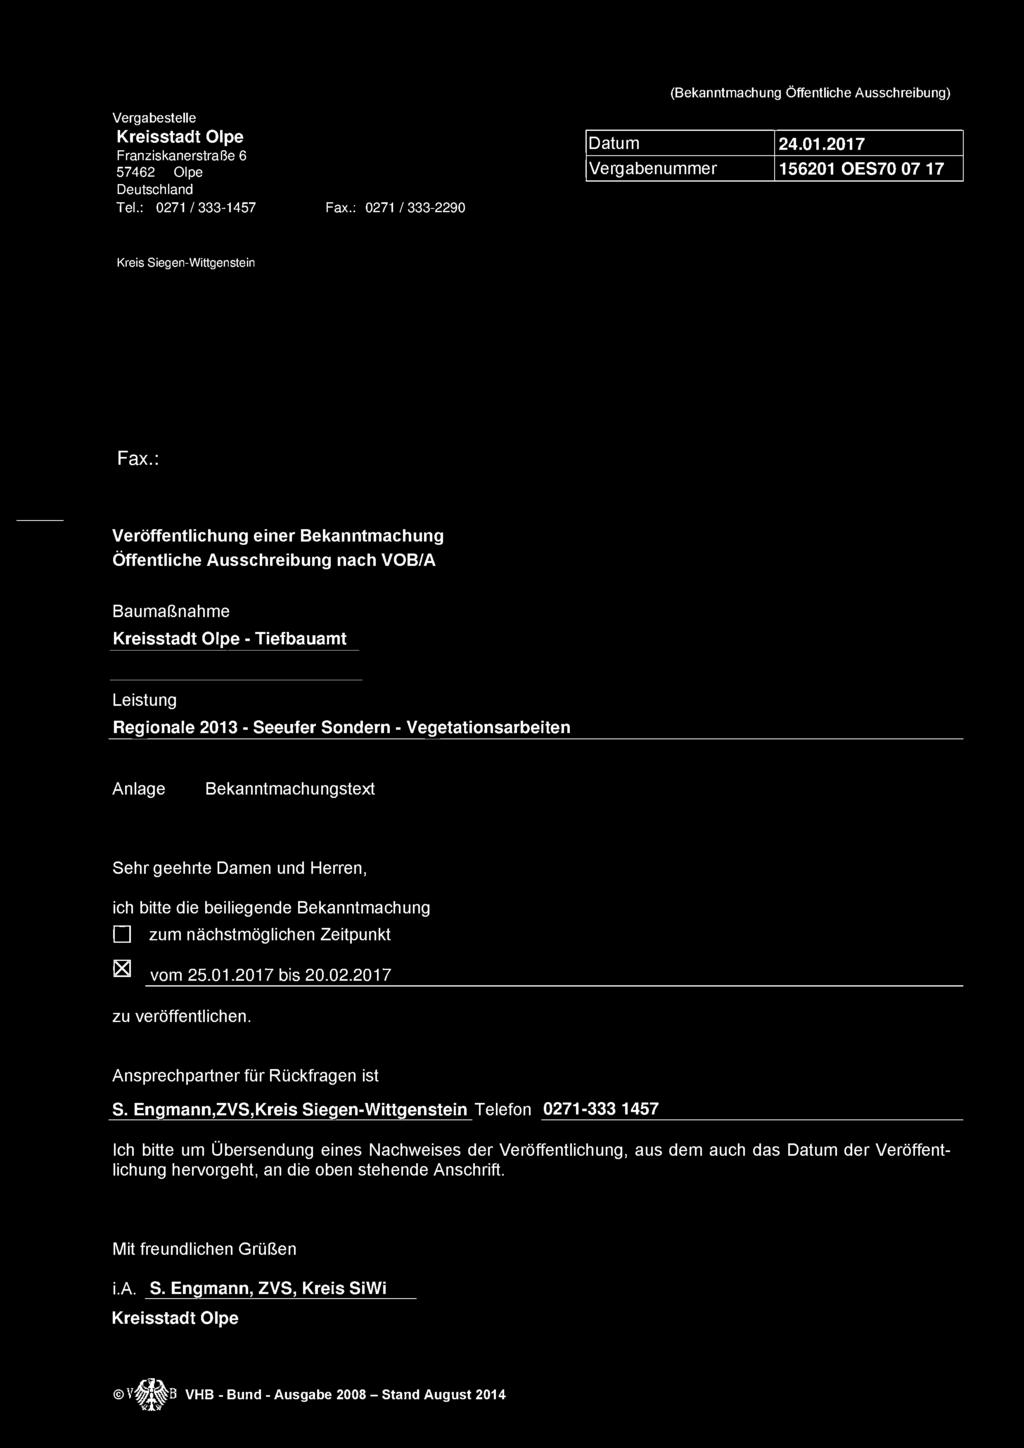 Vergabestelle Kreisstadt Olpe Datum 24.01.2017 Franziskanerstraße 6 Vergabenummer 156201 OES70 07 17 Deutschland Tel.: 0271 /333-1457 Fax.: 0271 /333-2290 Kreis Siegen-Wittgenstein Fax.